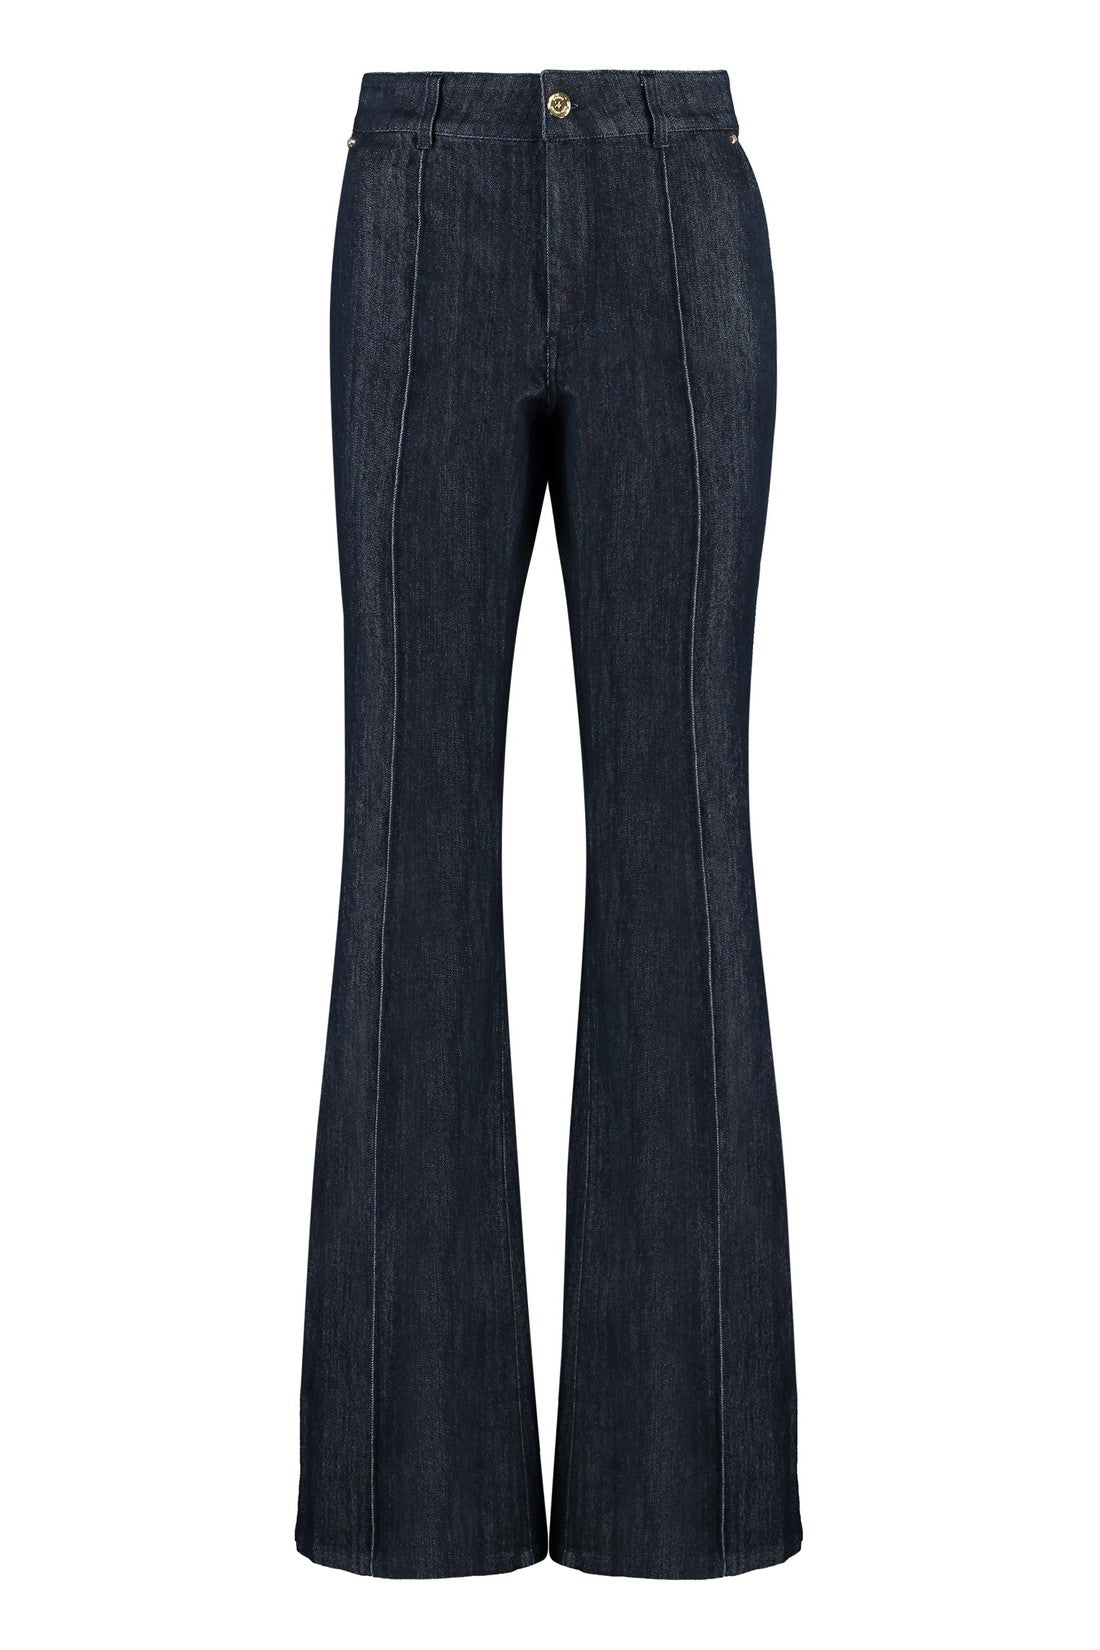 MICHAEL MICHAEL KORS-OUTLET-SALE-Bootcut jeans-ARCHIVIST